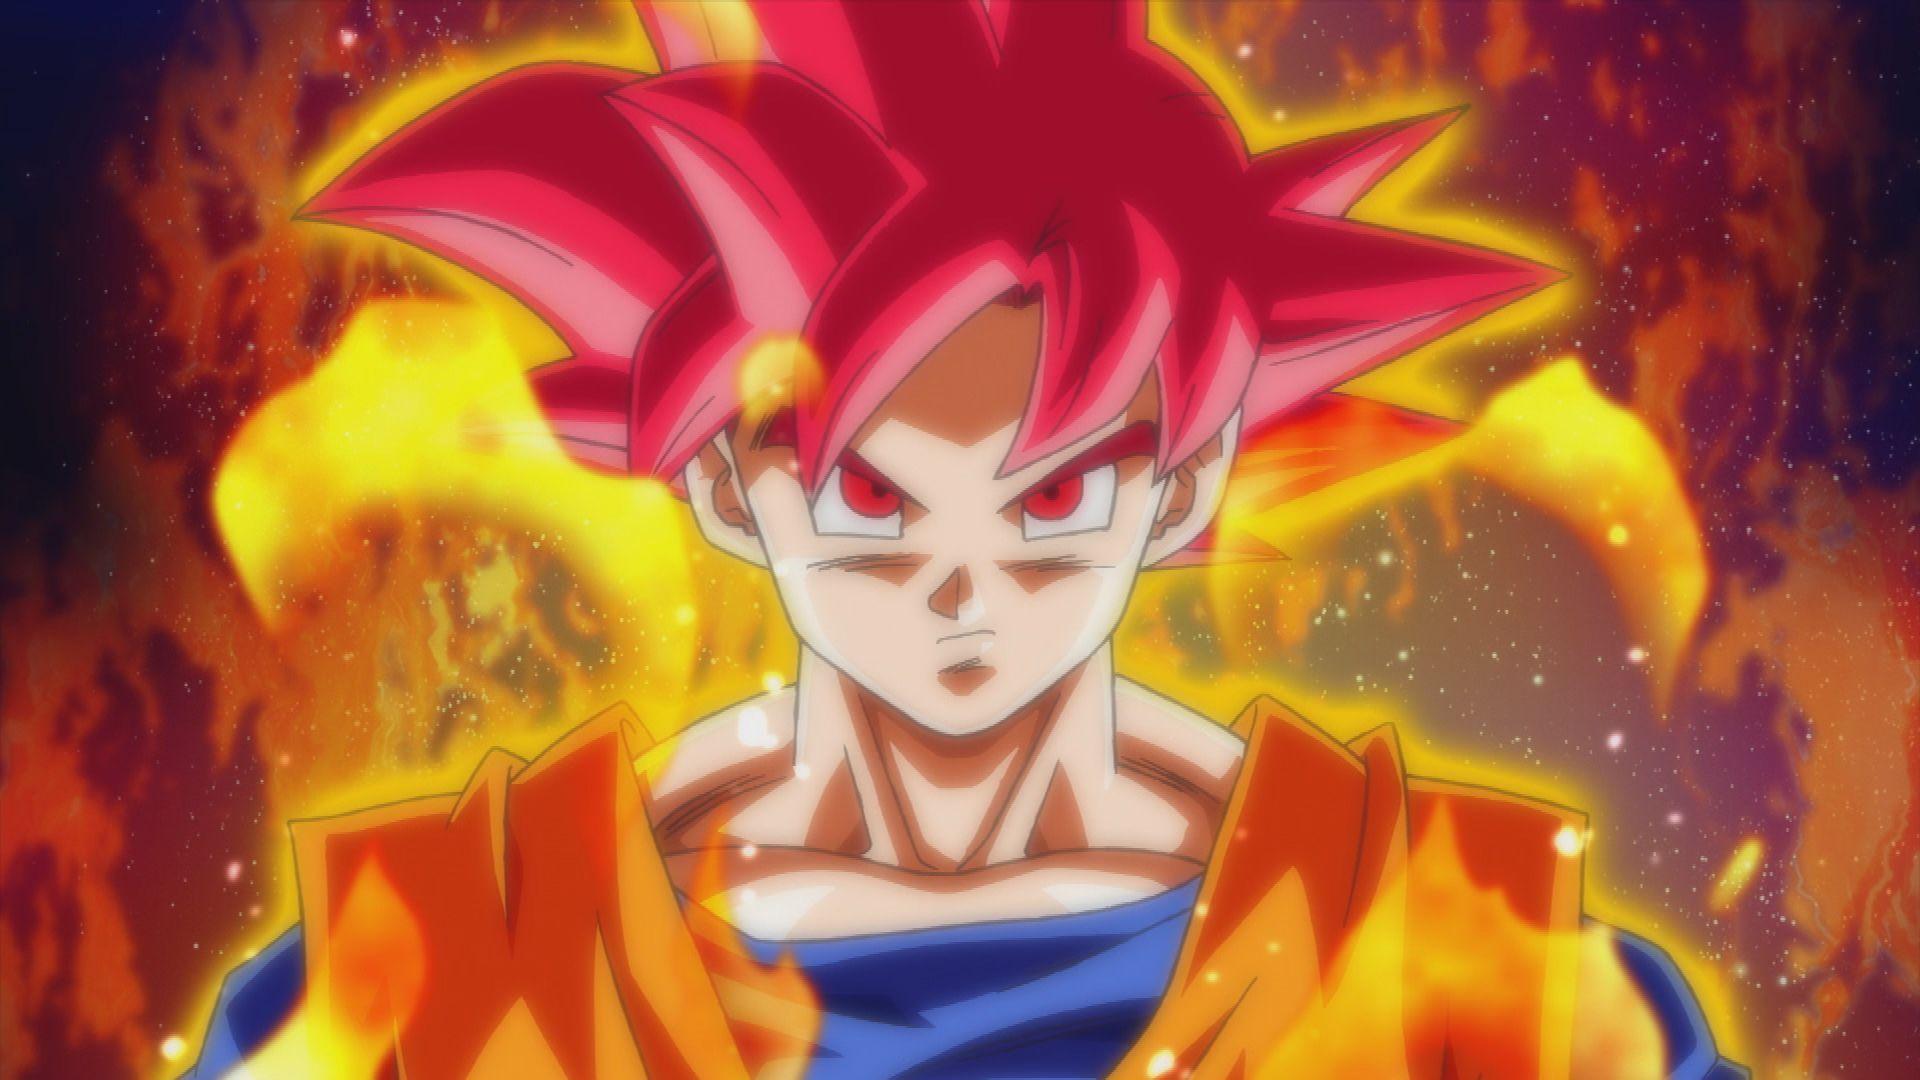 Dragon Ball Z Goku Super Saiyan God Wallpaper. Frenzia.com. Goku super saiyan god, Goku super saiyan, Dragon ball image